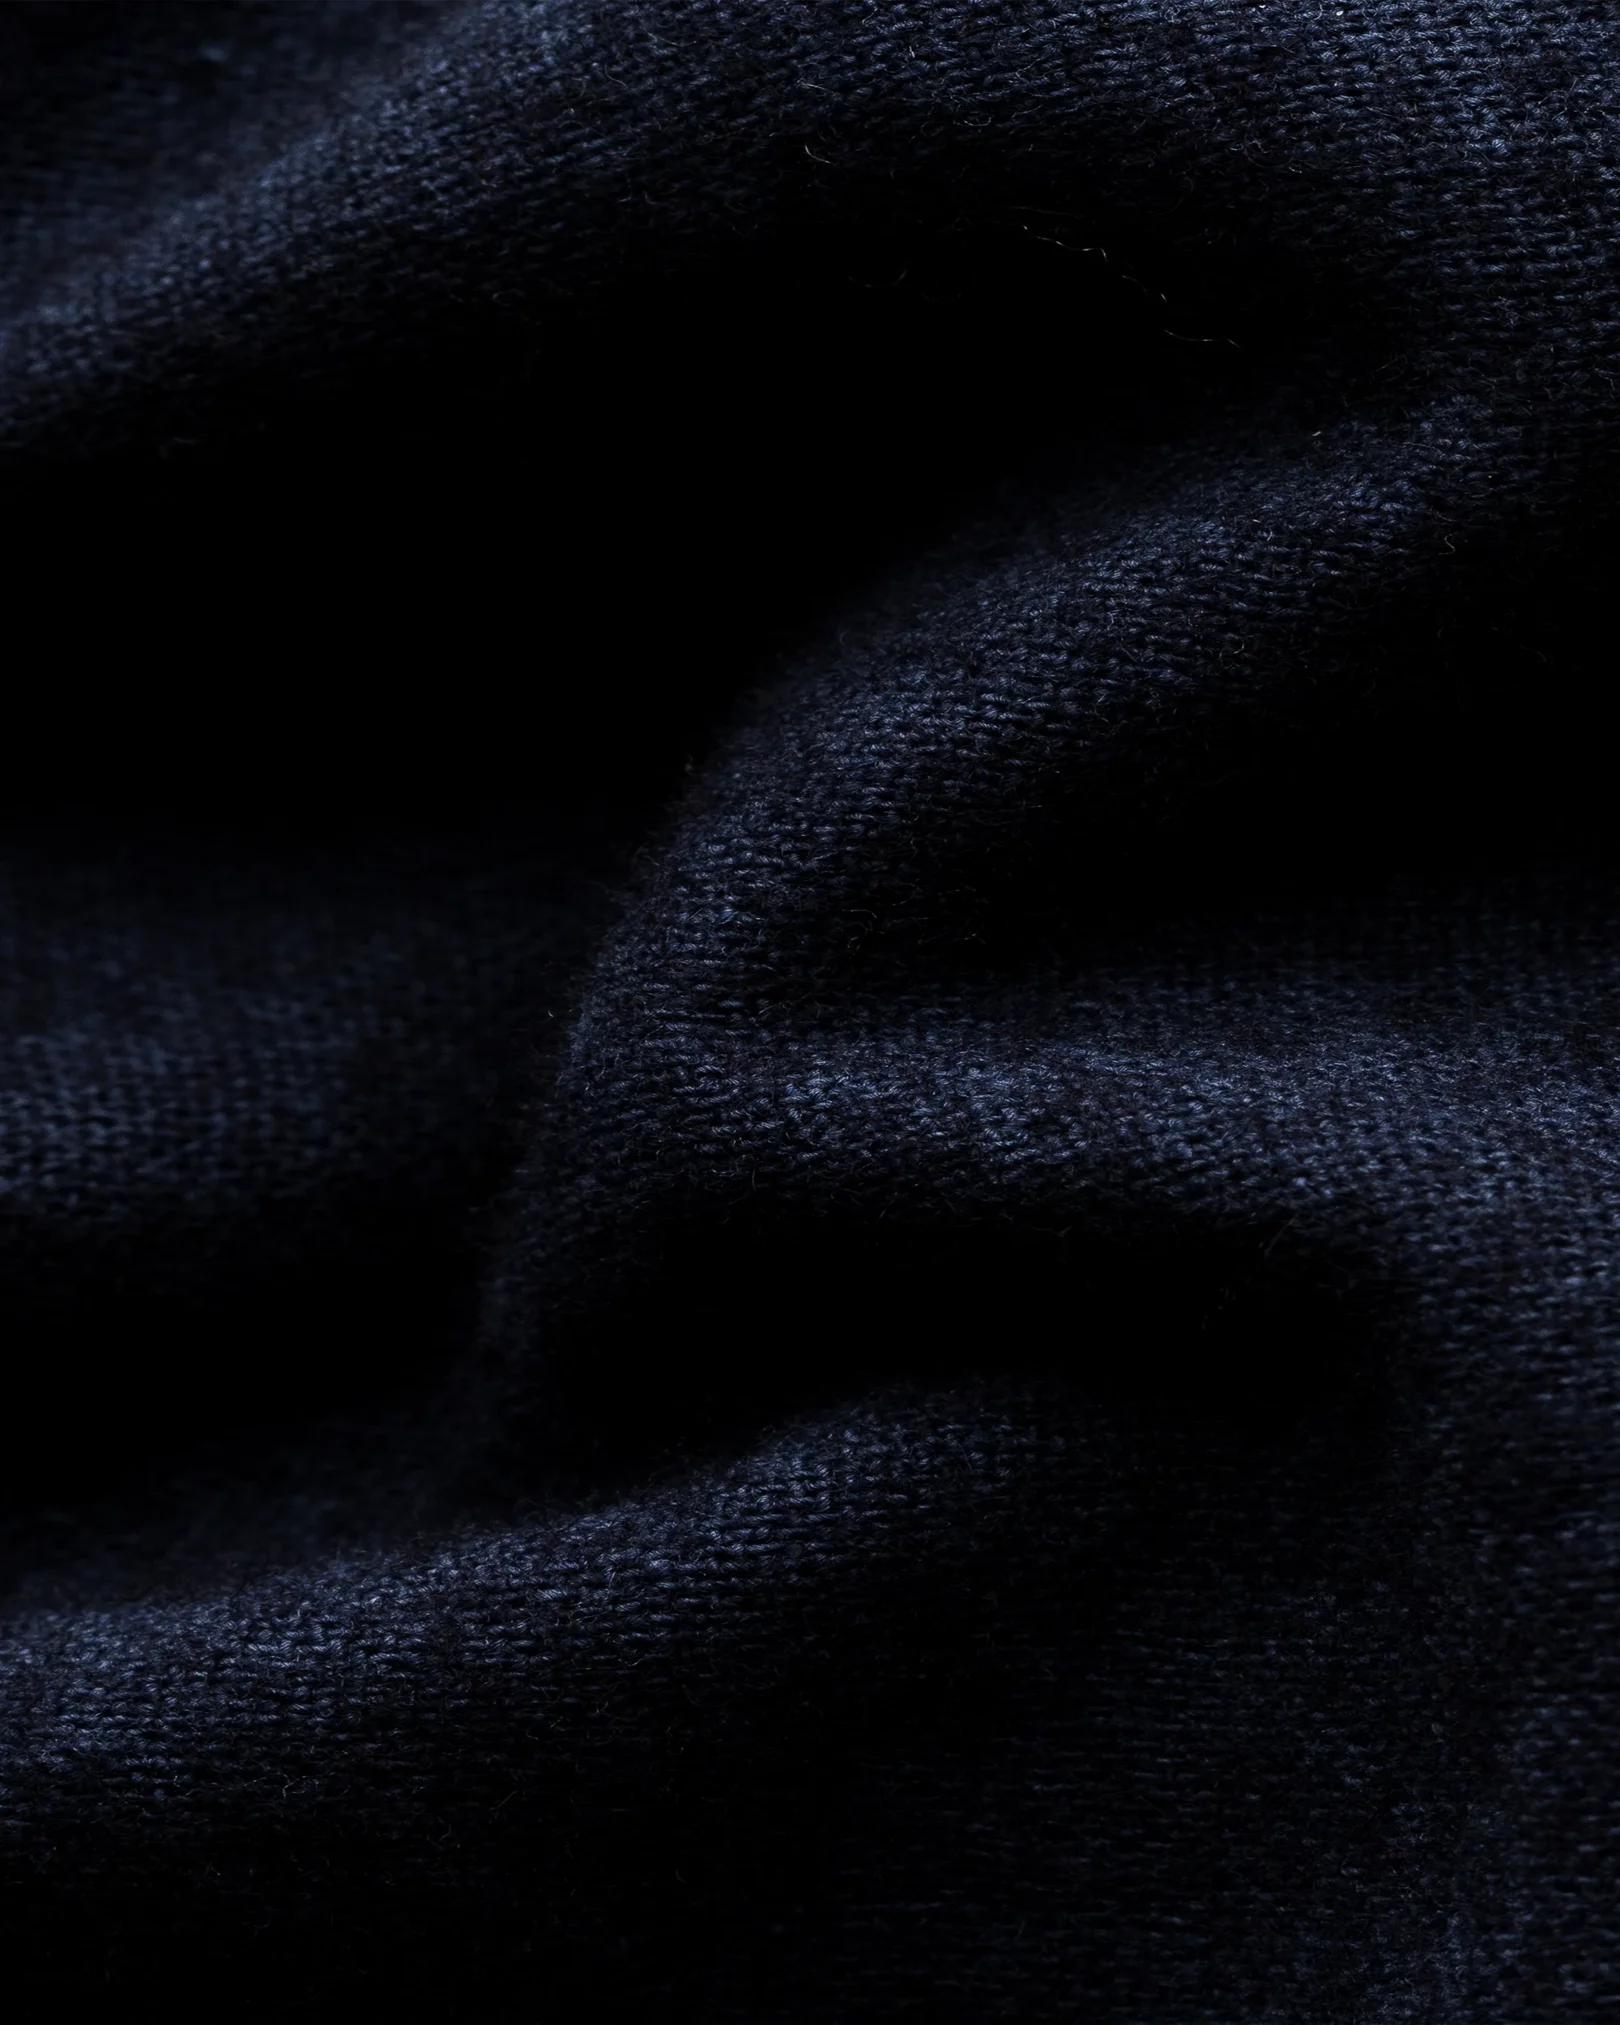 Eton - dark blue cotton wool cashmere overshirt turn down single cuff pointed strap regular